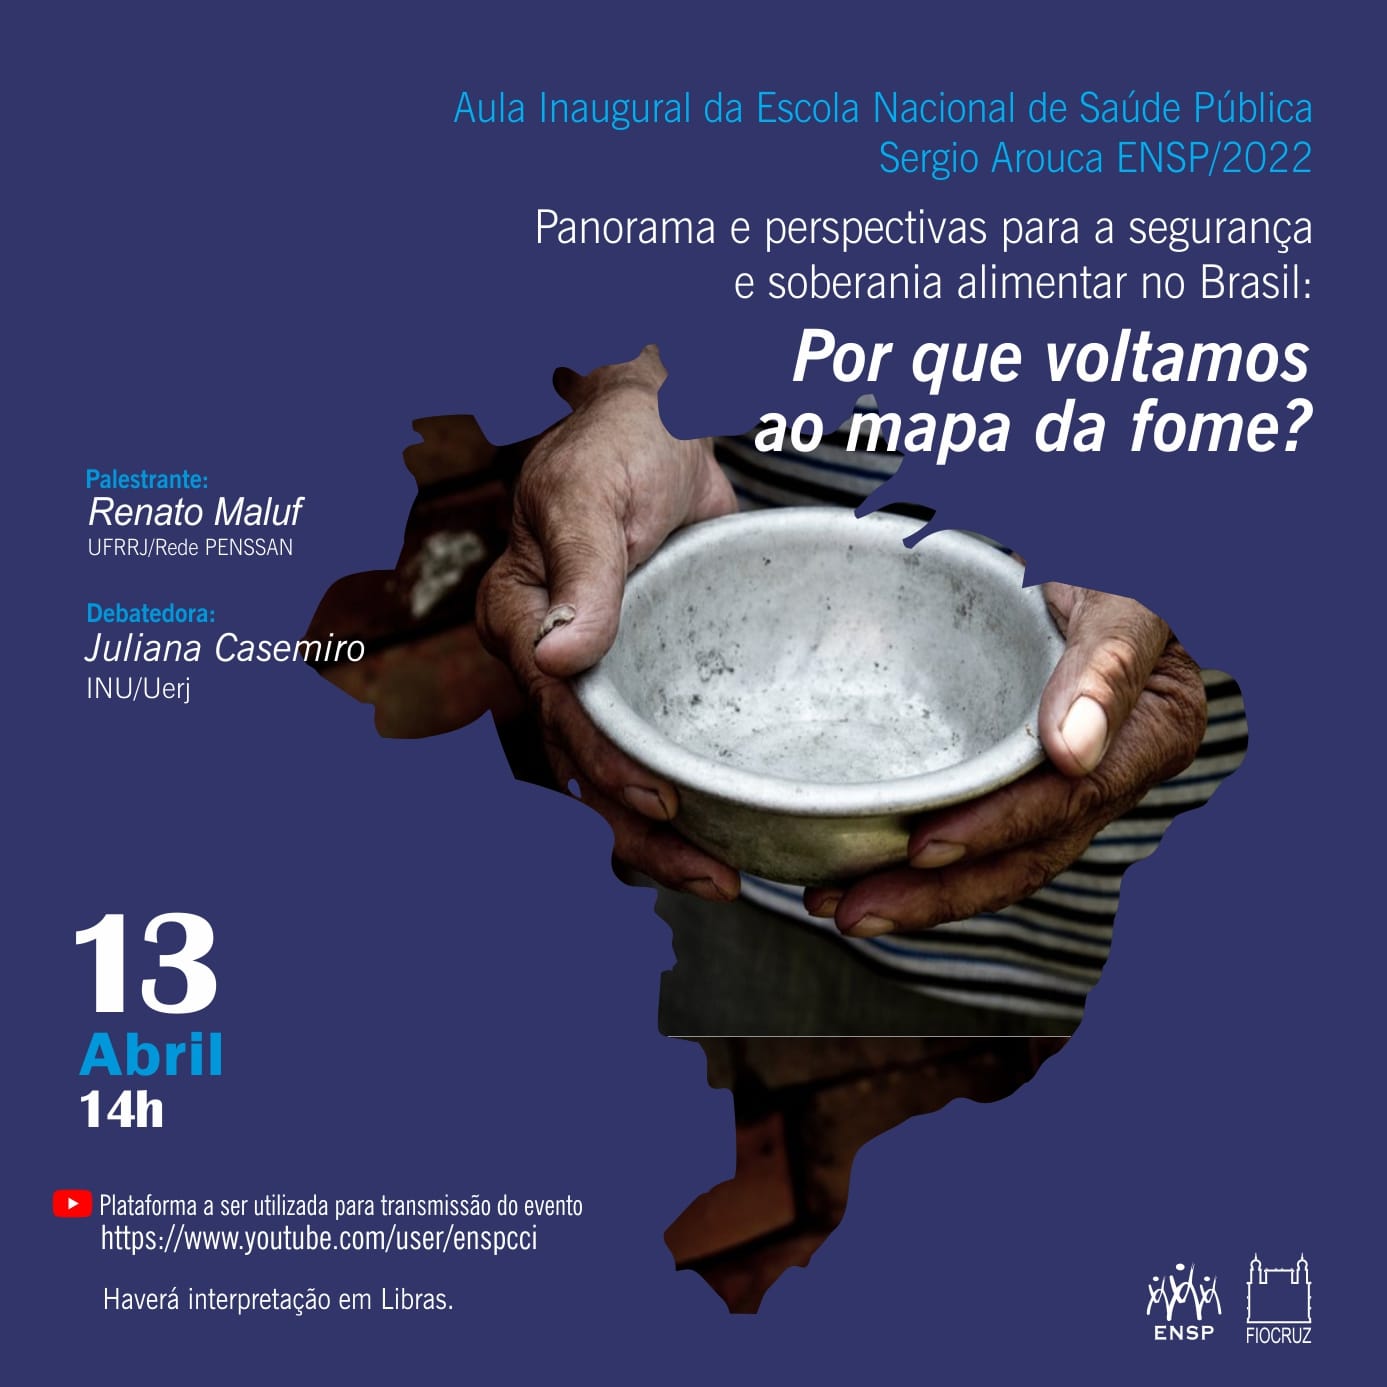 Aula inaugural da Ensp alerta para a grave situação de insegurança alimentar no Brasil